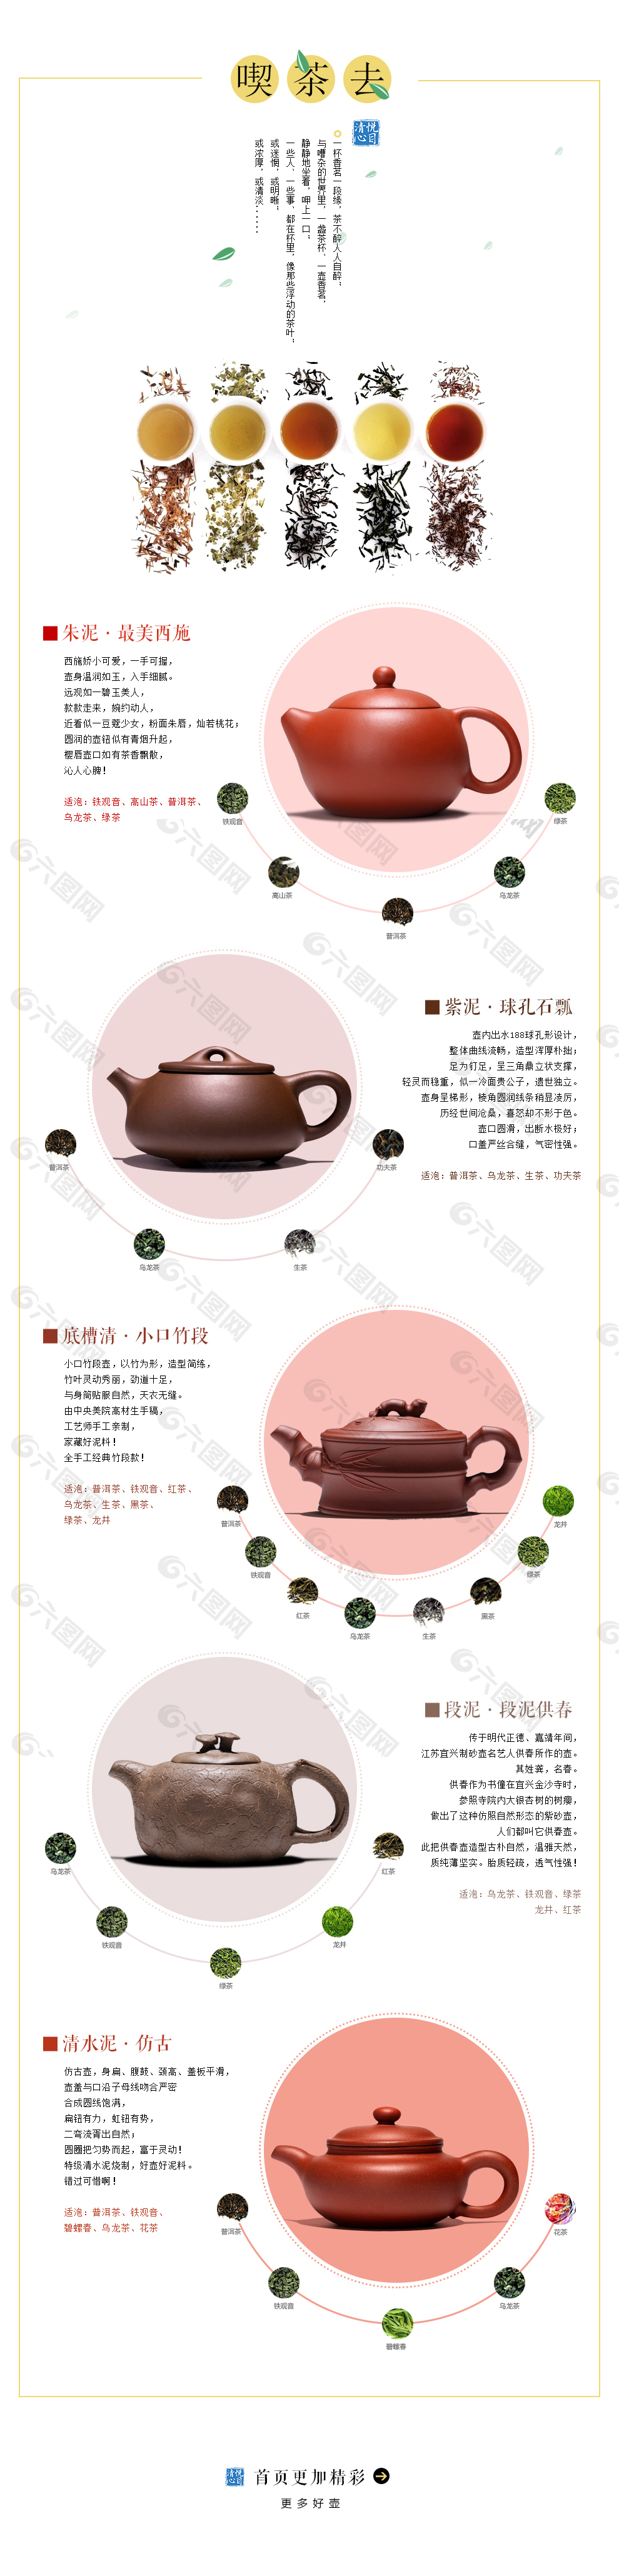 品茶专题页